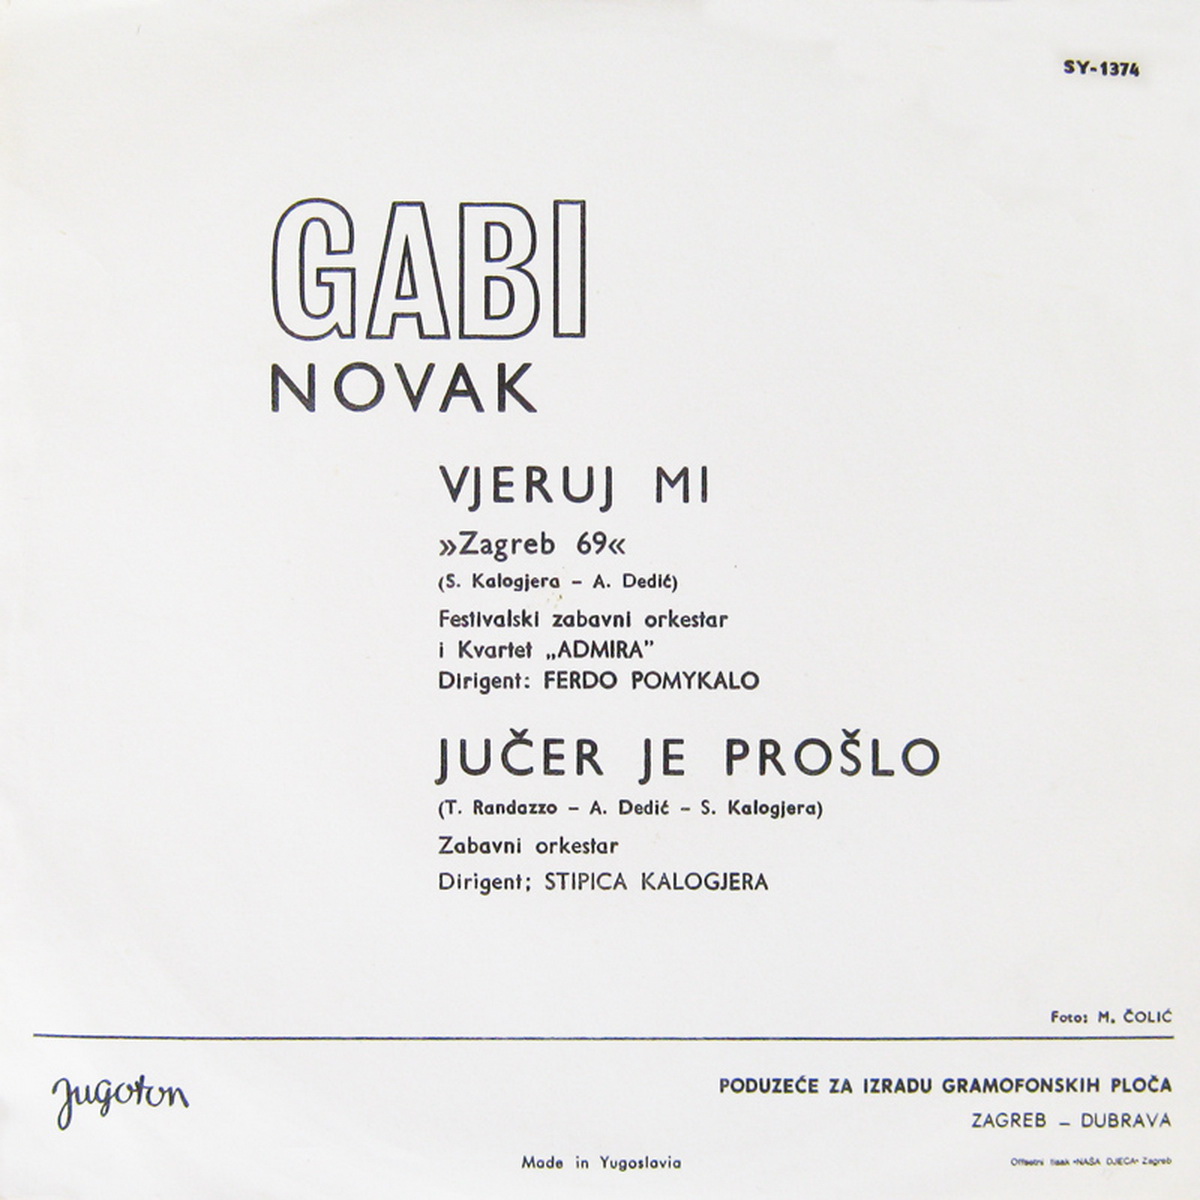 Gabi Novak 1969 Vjeruj mi Zagreb 69 B